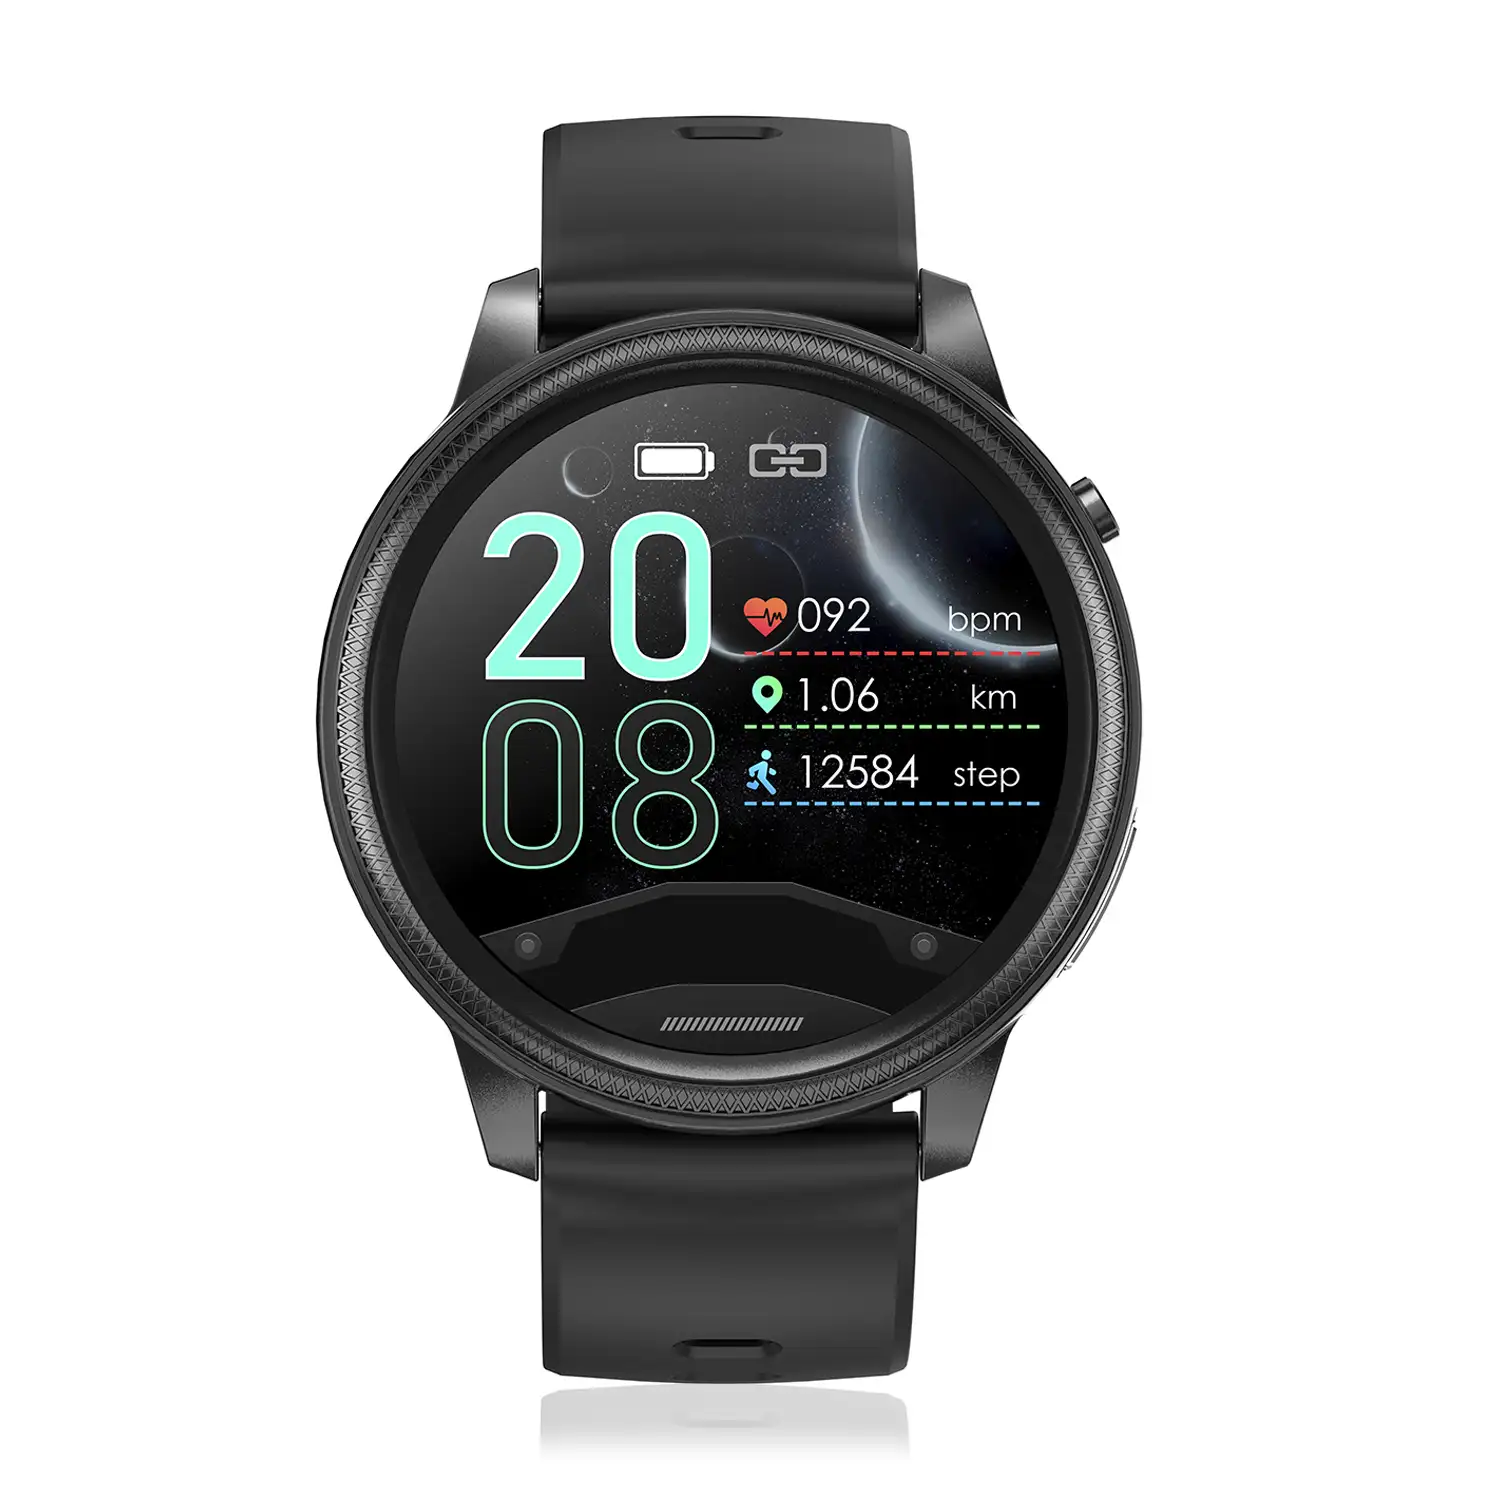 Smartwatch S31 con termómetro corporal, monitor de tensión y oxígeno en sangre. 7 modos deportivos. Notificaciones en pantalla.